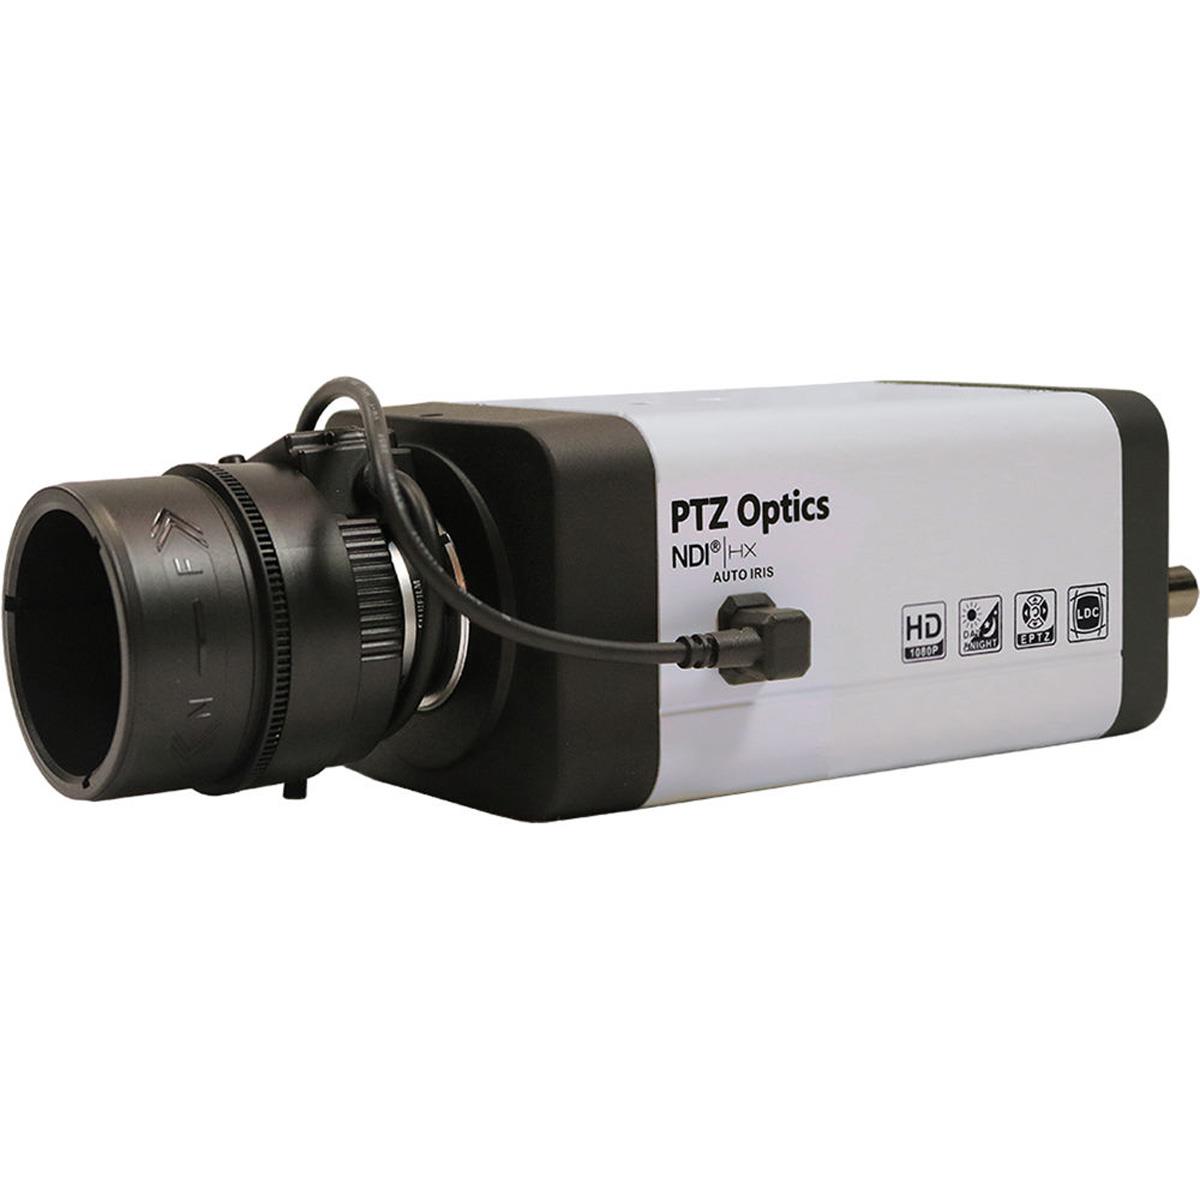 Image of PTZOptics VL-NDI-ZCAM Full HD NDI|HX 3G-SDI IP Network Camera with 4x Zoom Lens